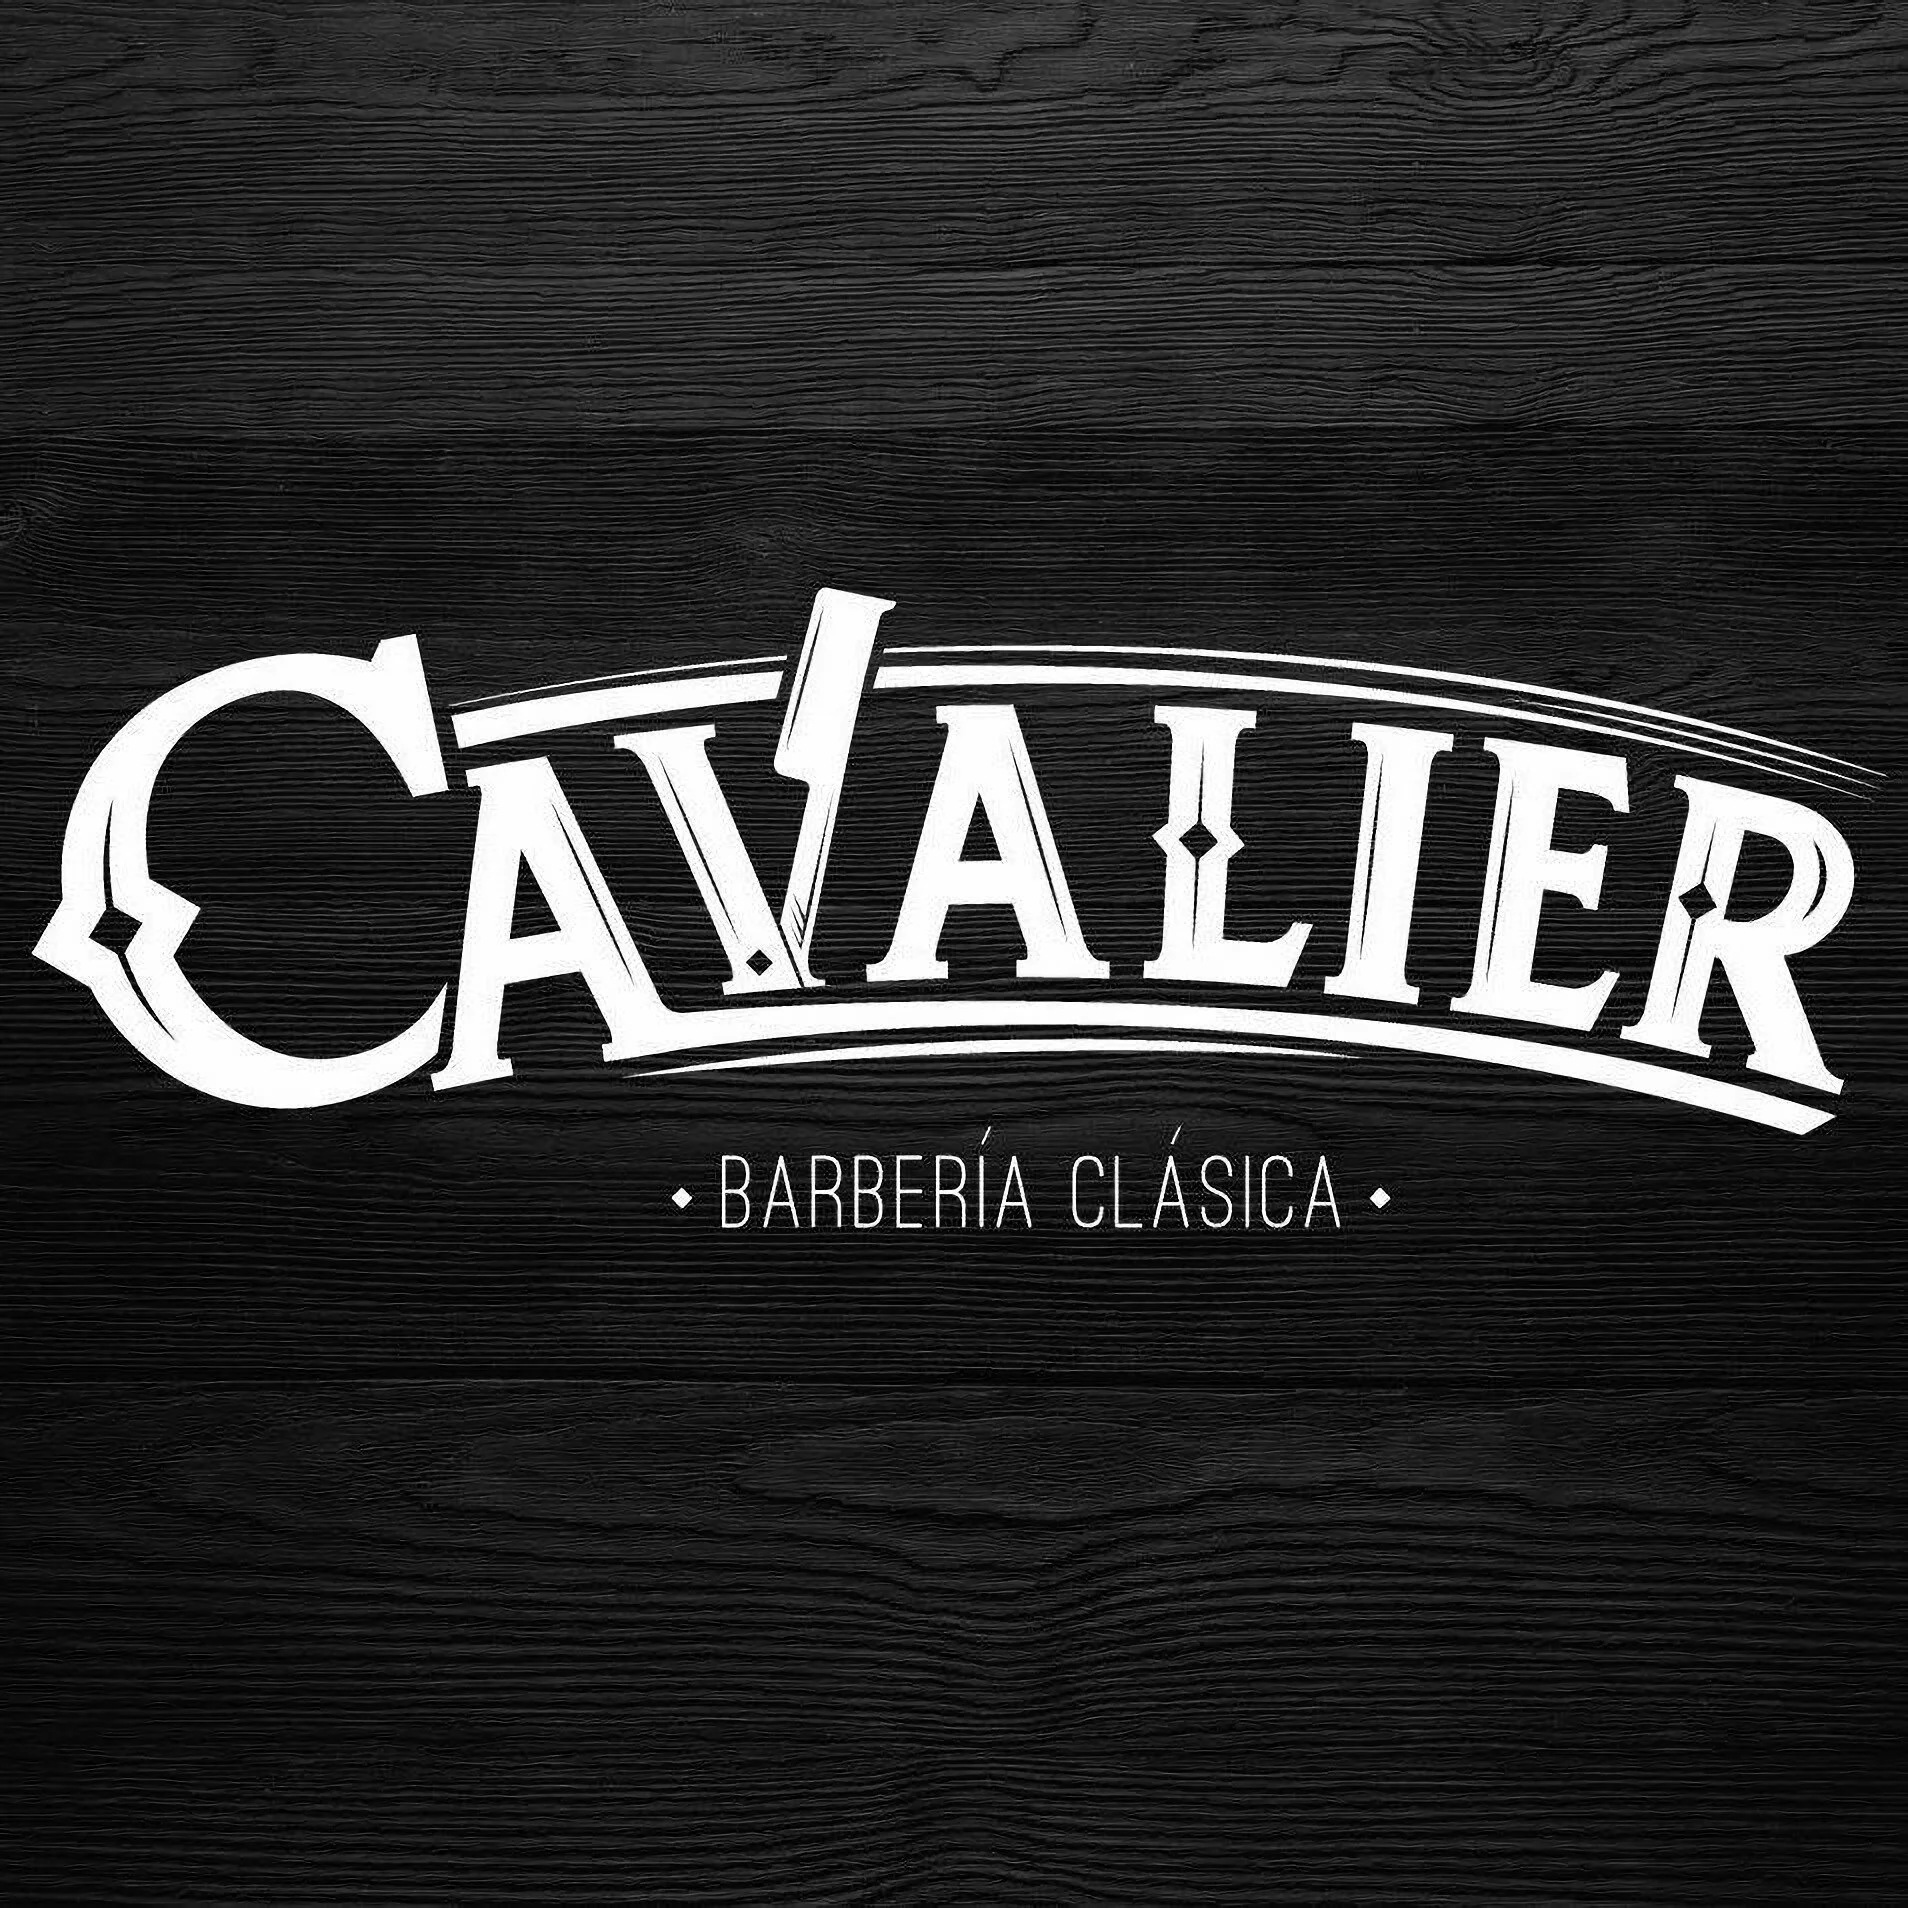 Barbería-cavalier-barberia-clasica-5030